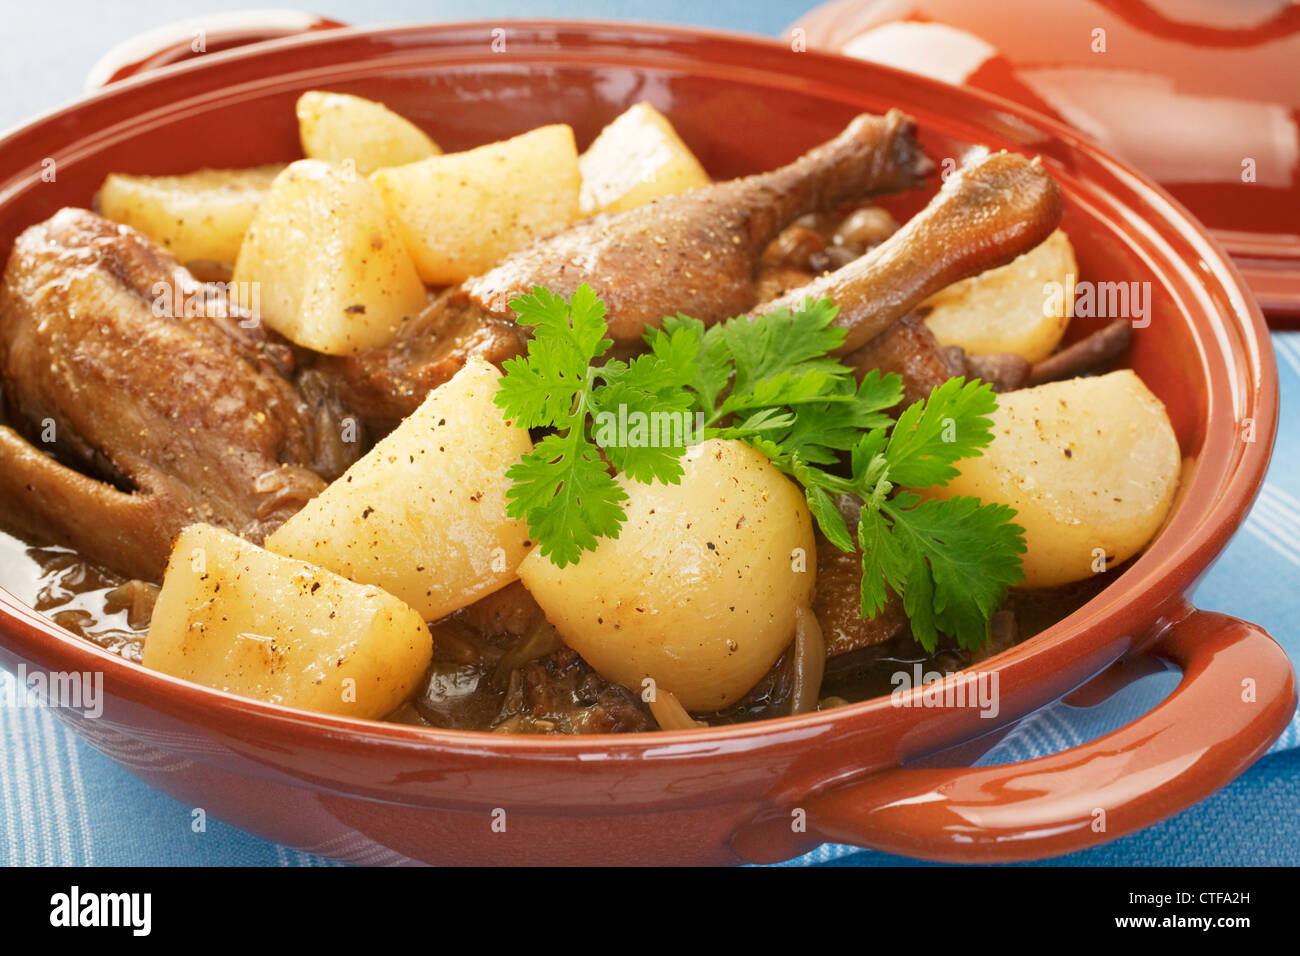 Un plat de ragoût de canard français, avec le navet est cuit avec du vin rouge, les oignons et les herbes. Banque D'Images